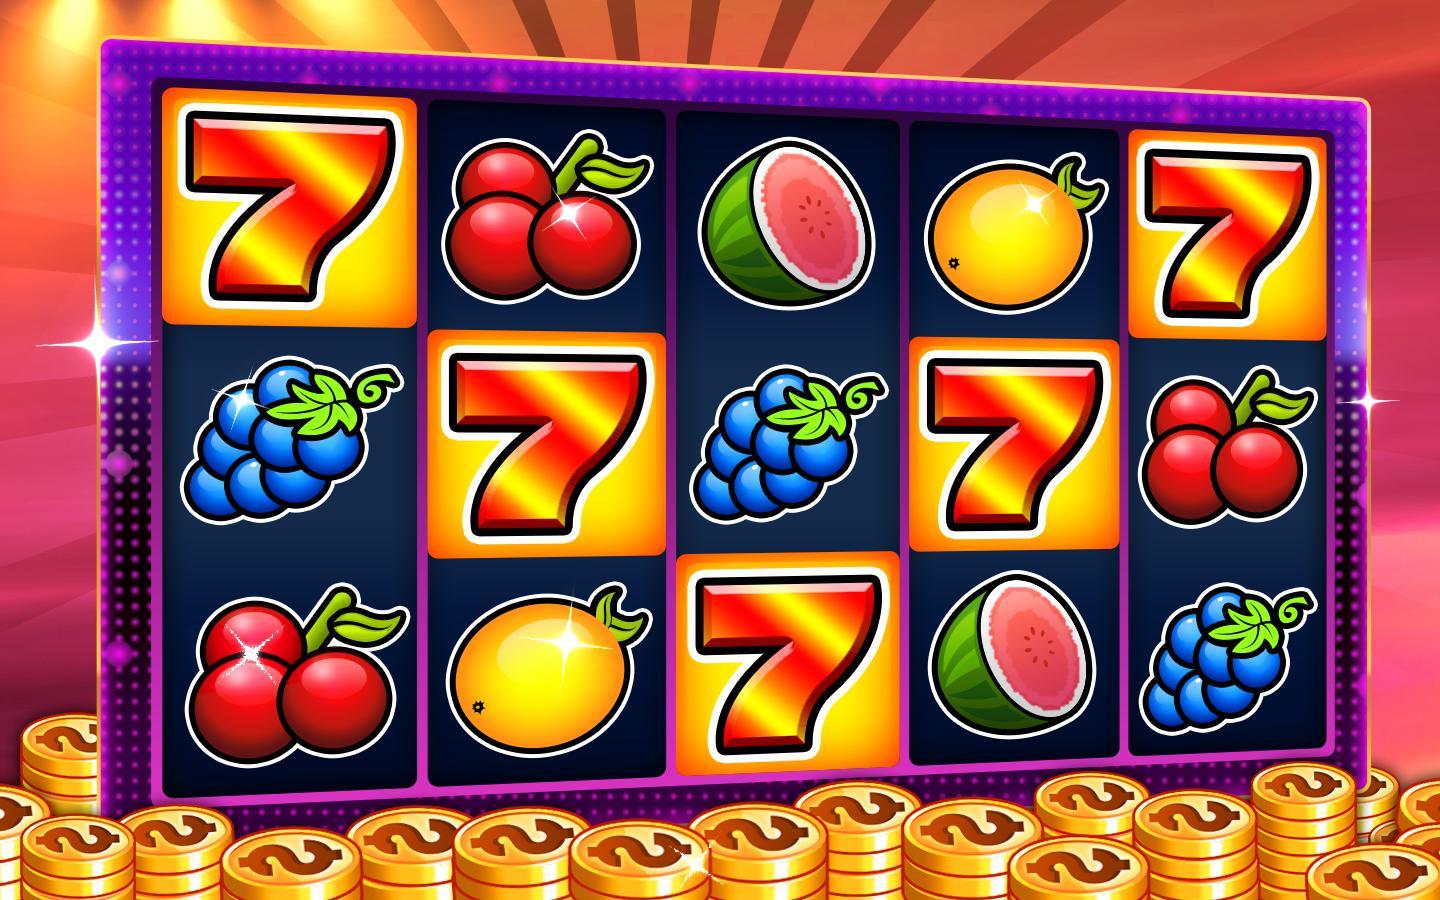 Slot machines - Casino slots 6.2 Screenshot 1